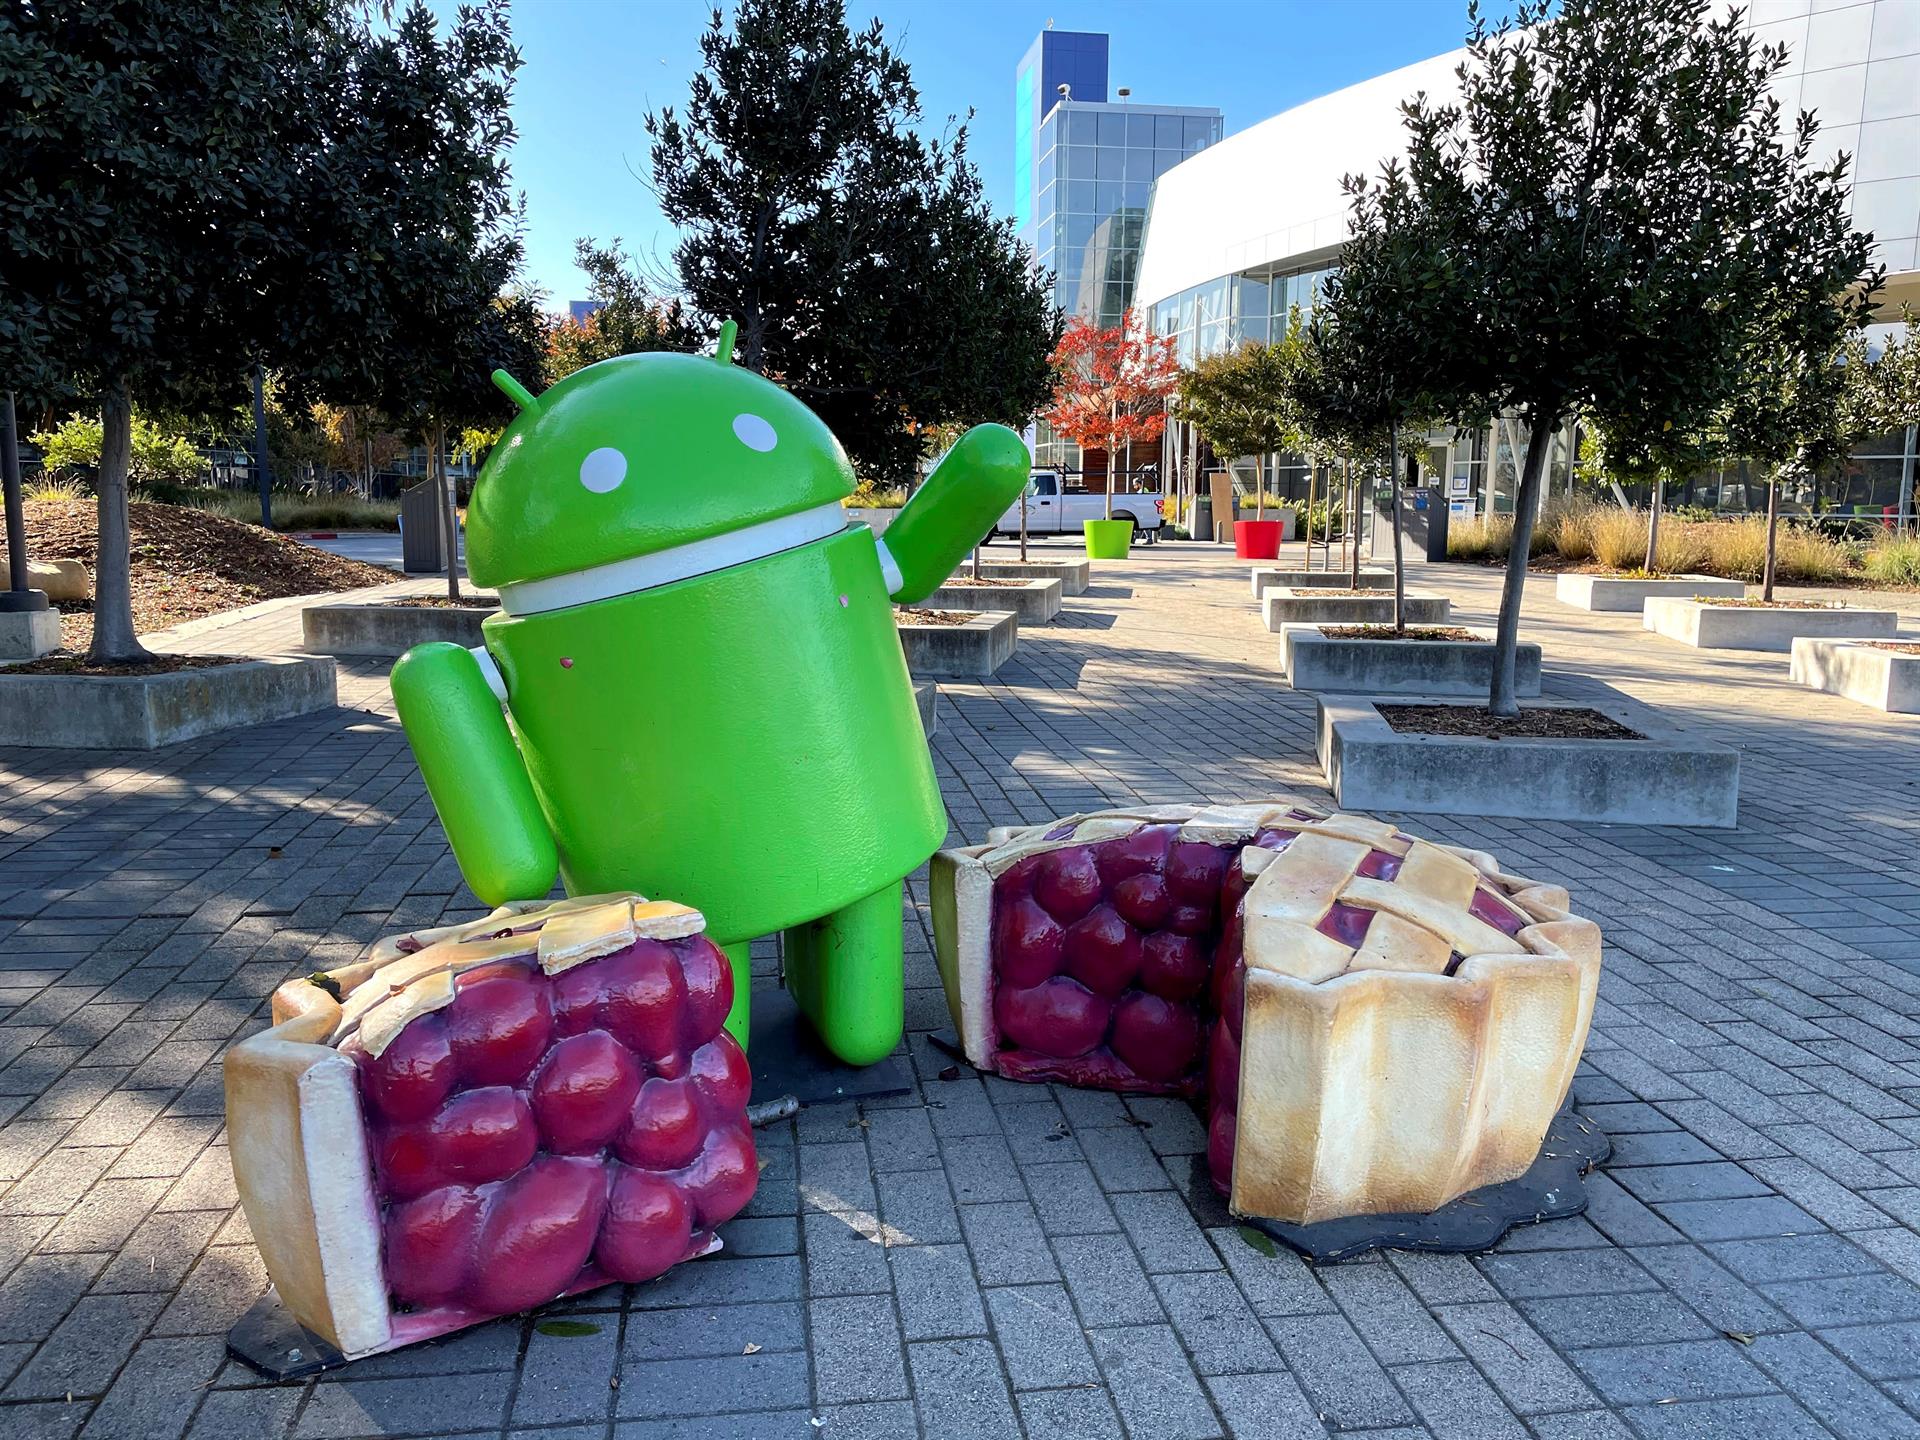 Una estatua del logotipo del sistema Android preside una de las entradas a la sede de Google en Mountain View en California, EE. UU. (Foto Prensa Libre: EFE)